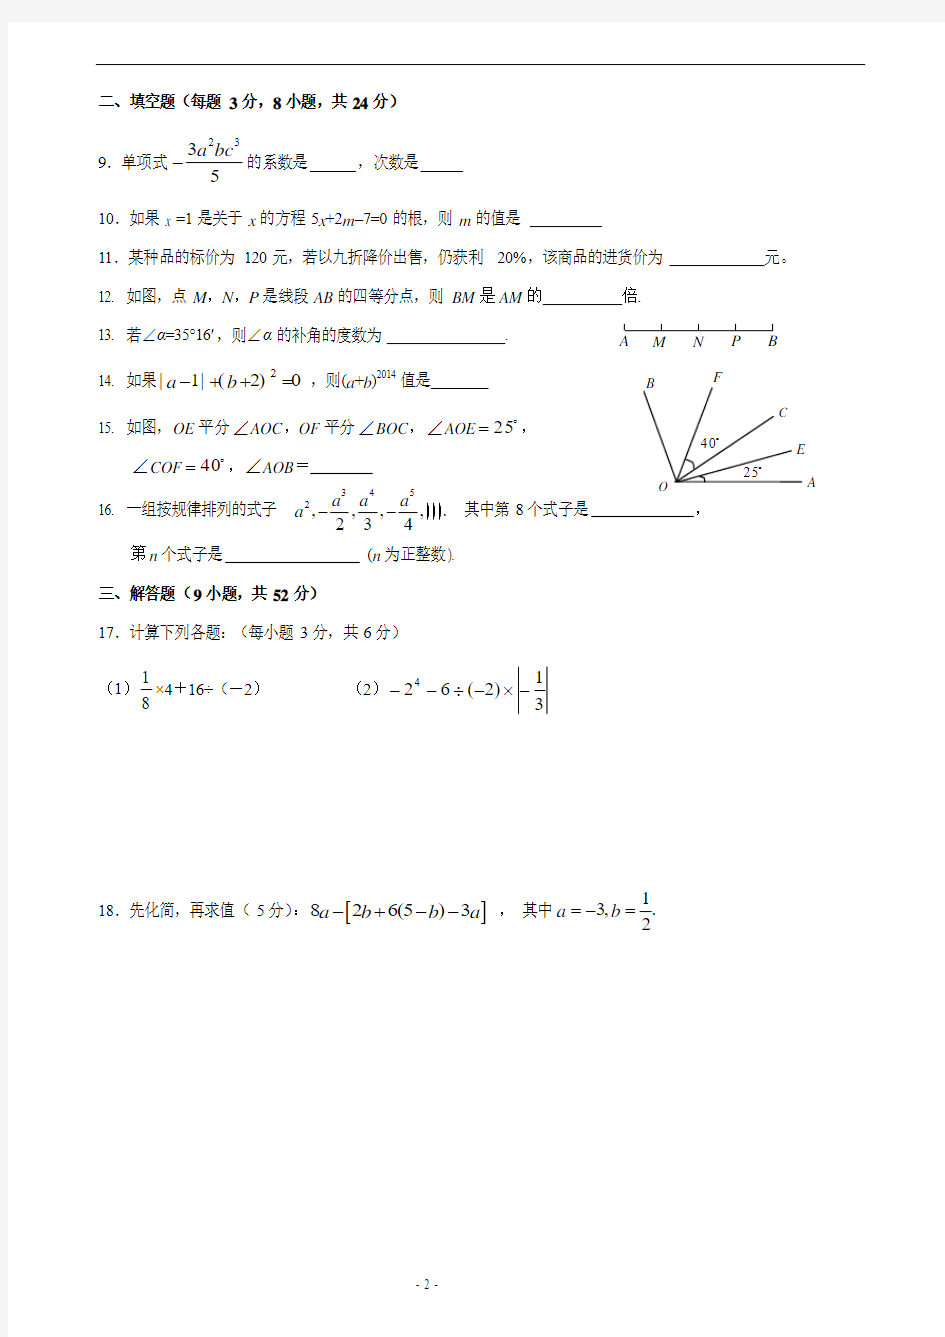 云南省腾冲县2014-2015学年七年级(上)六校期末联考数学试题(含答案)